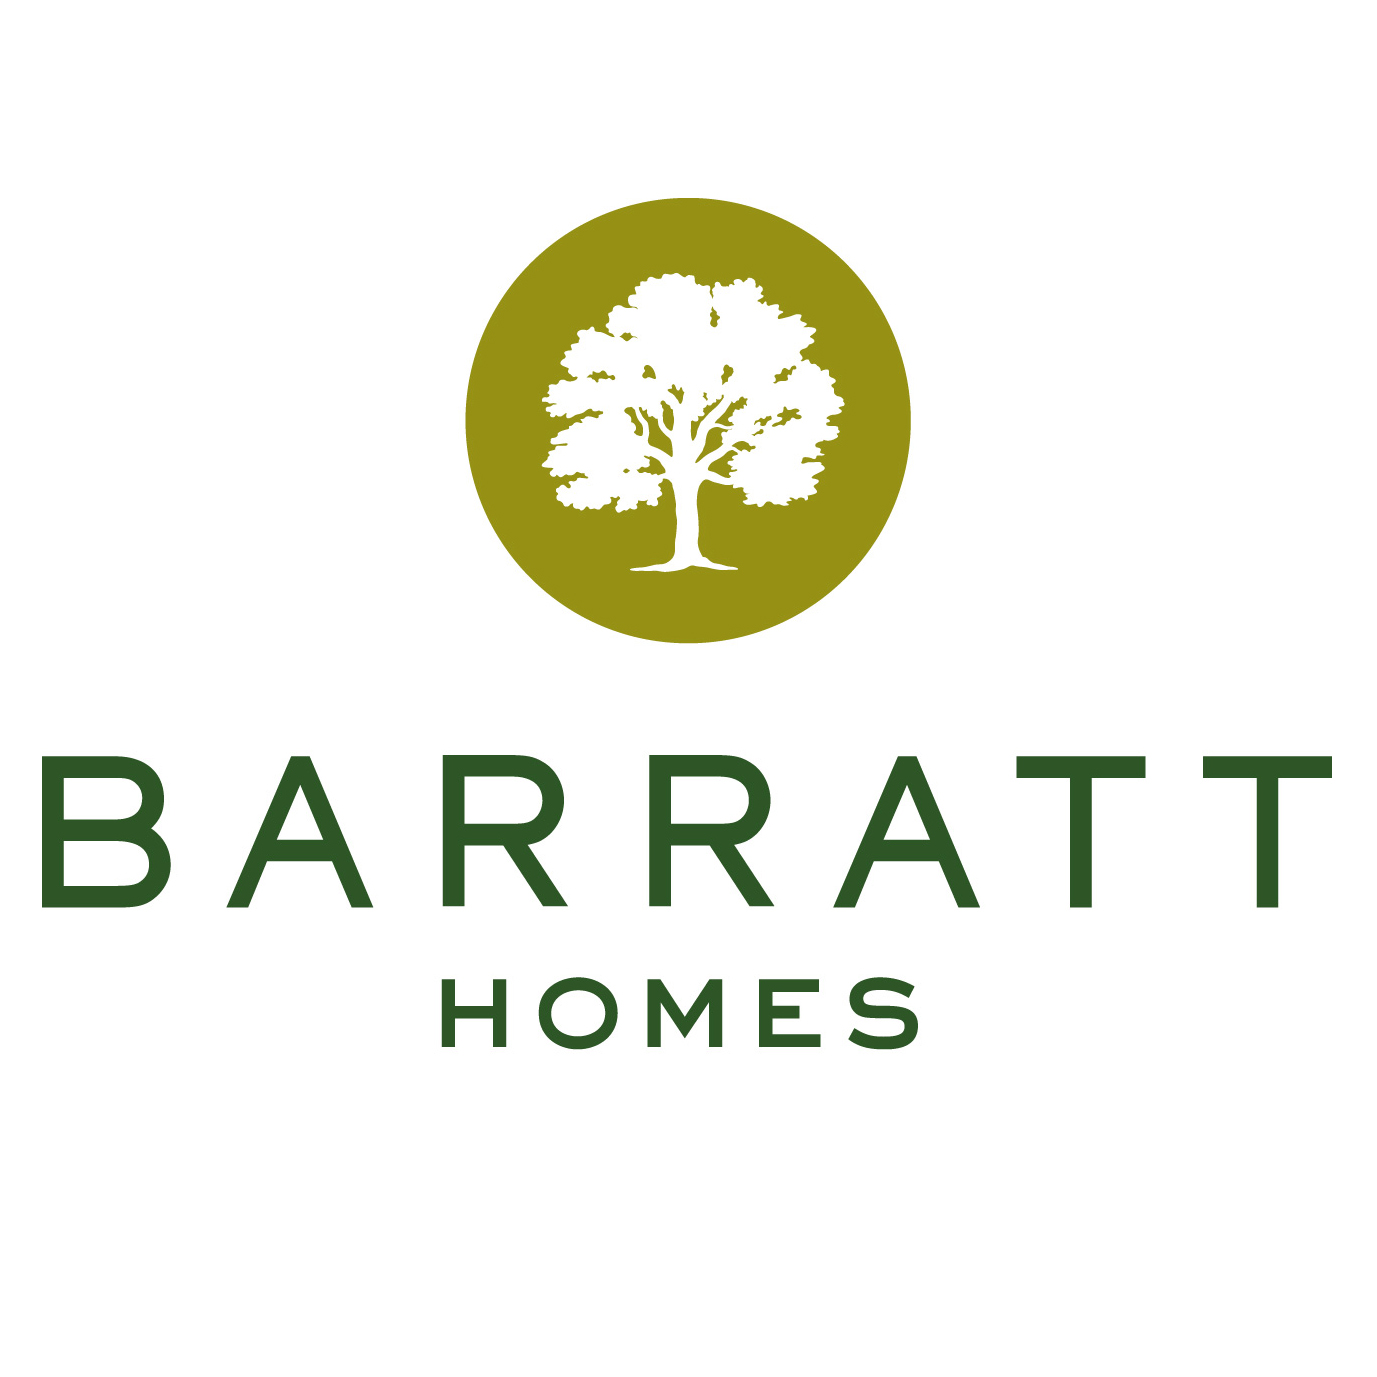 Barratt Homes.jpg